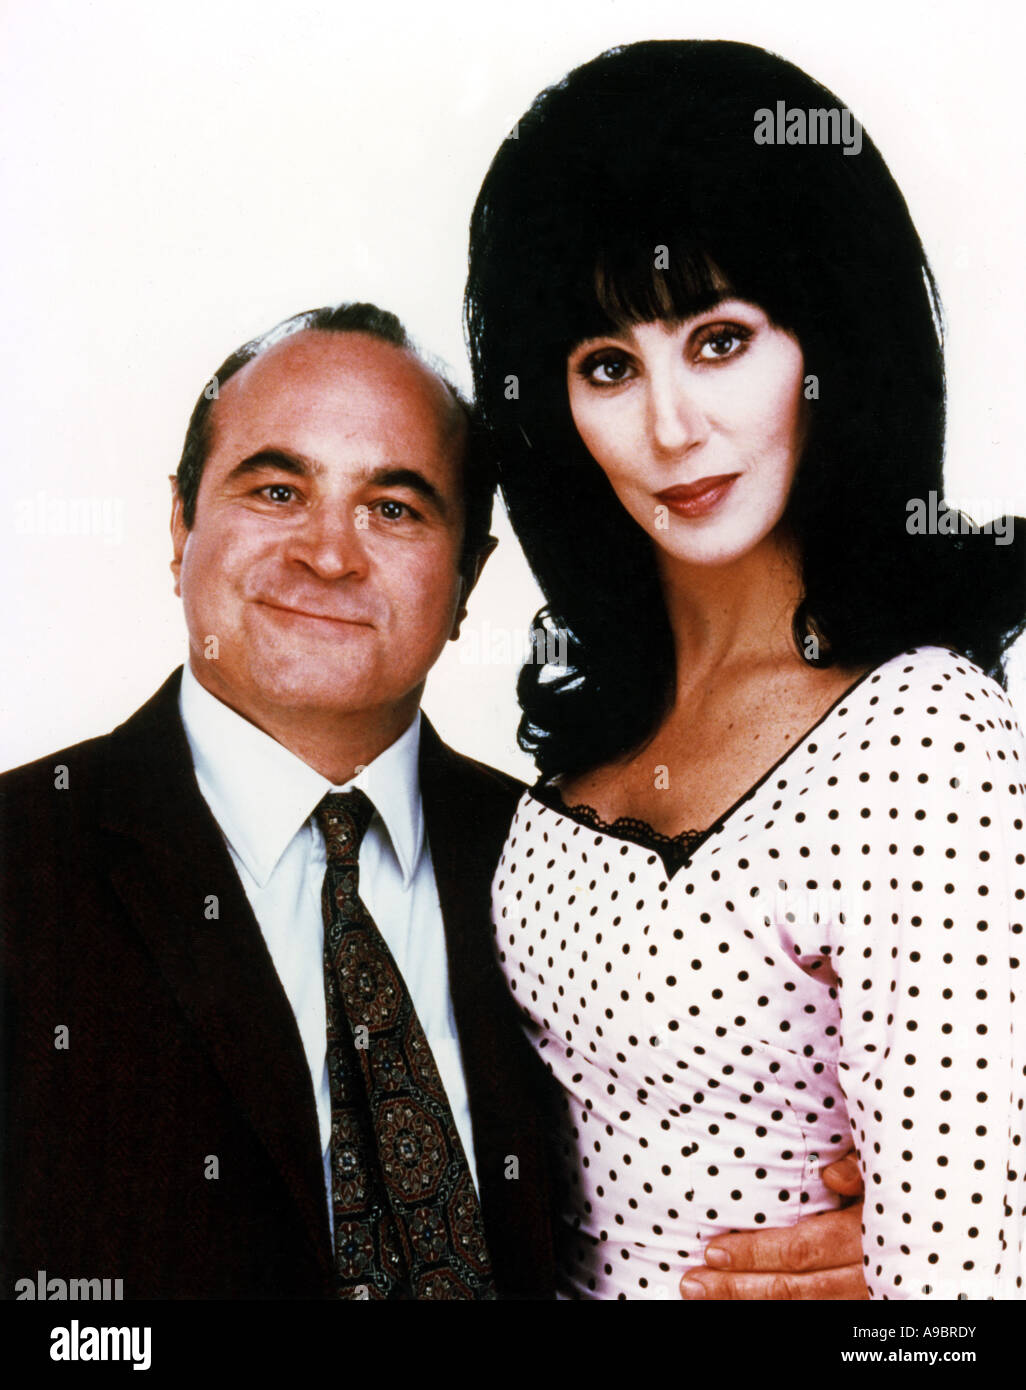 MEERJUNGFRAUEN - 1990 Rang/Orion Film mit Cher und Bob Hoskins Stockfoto